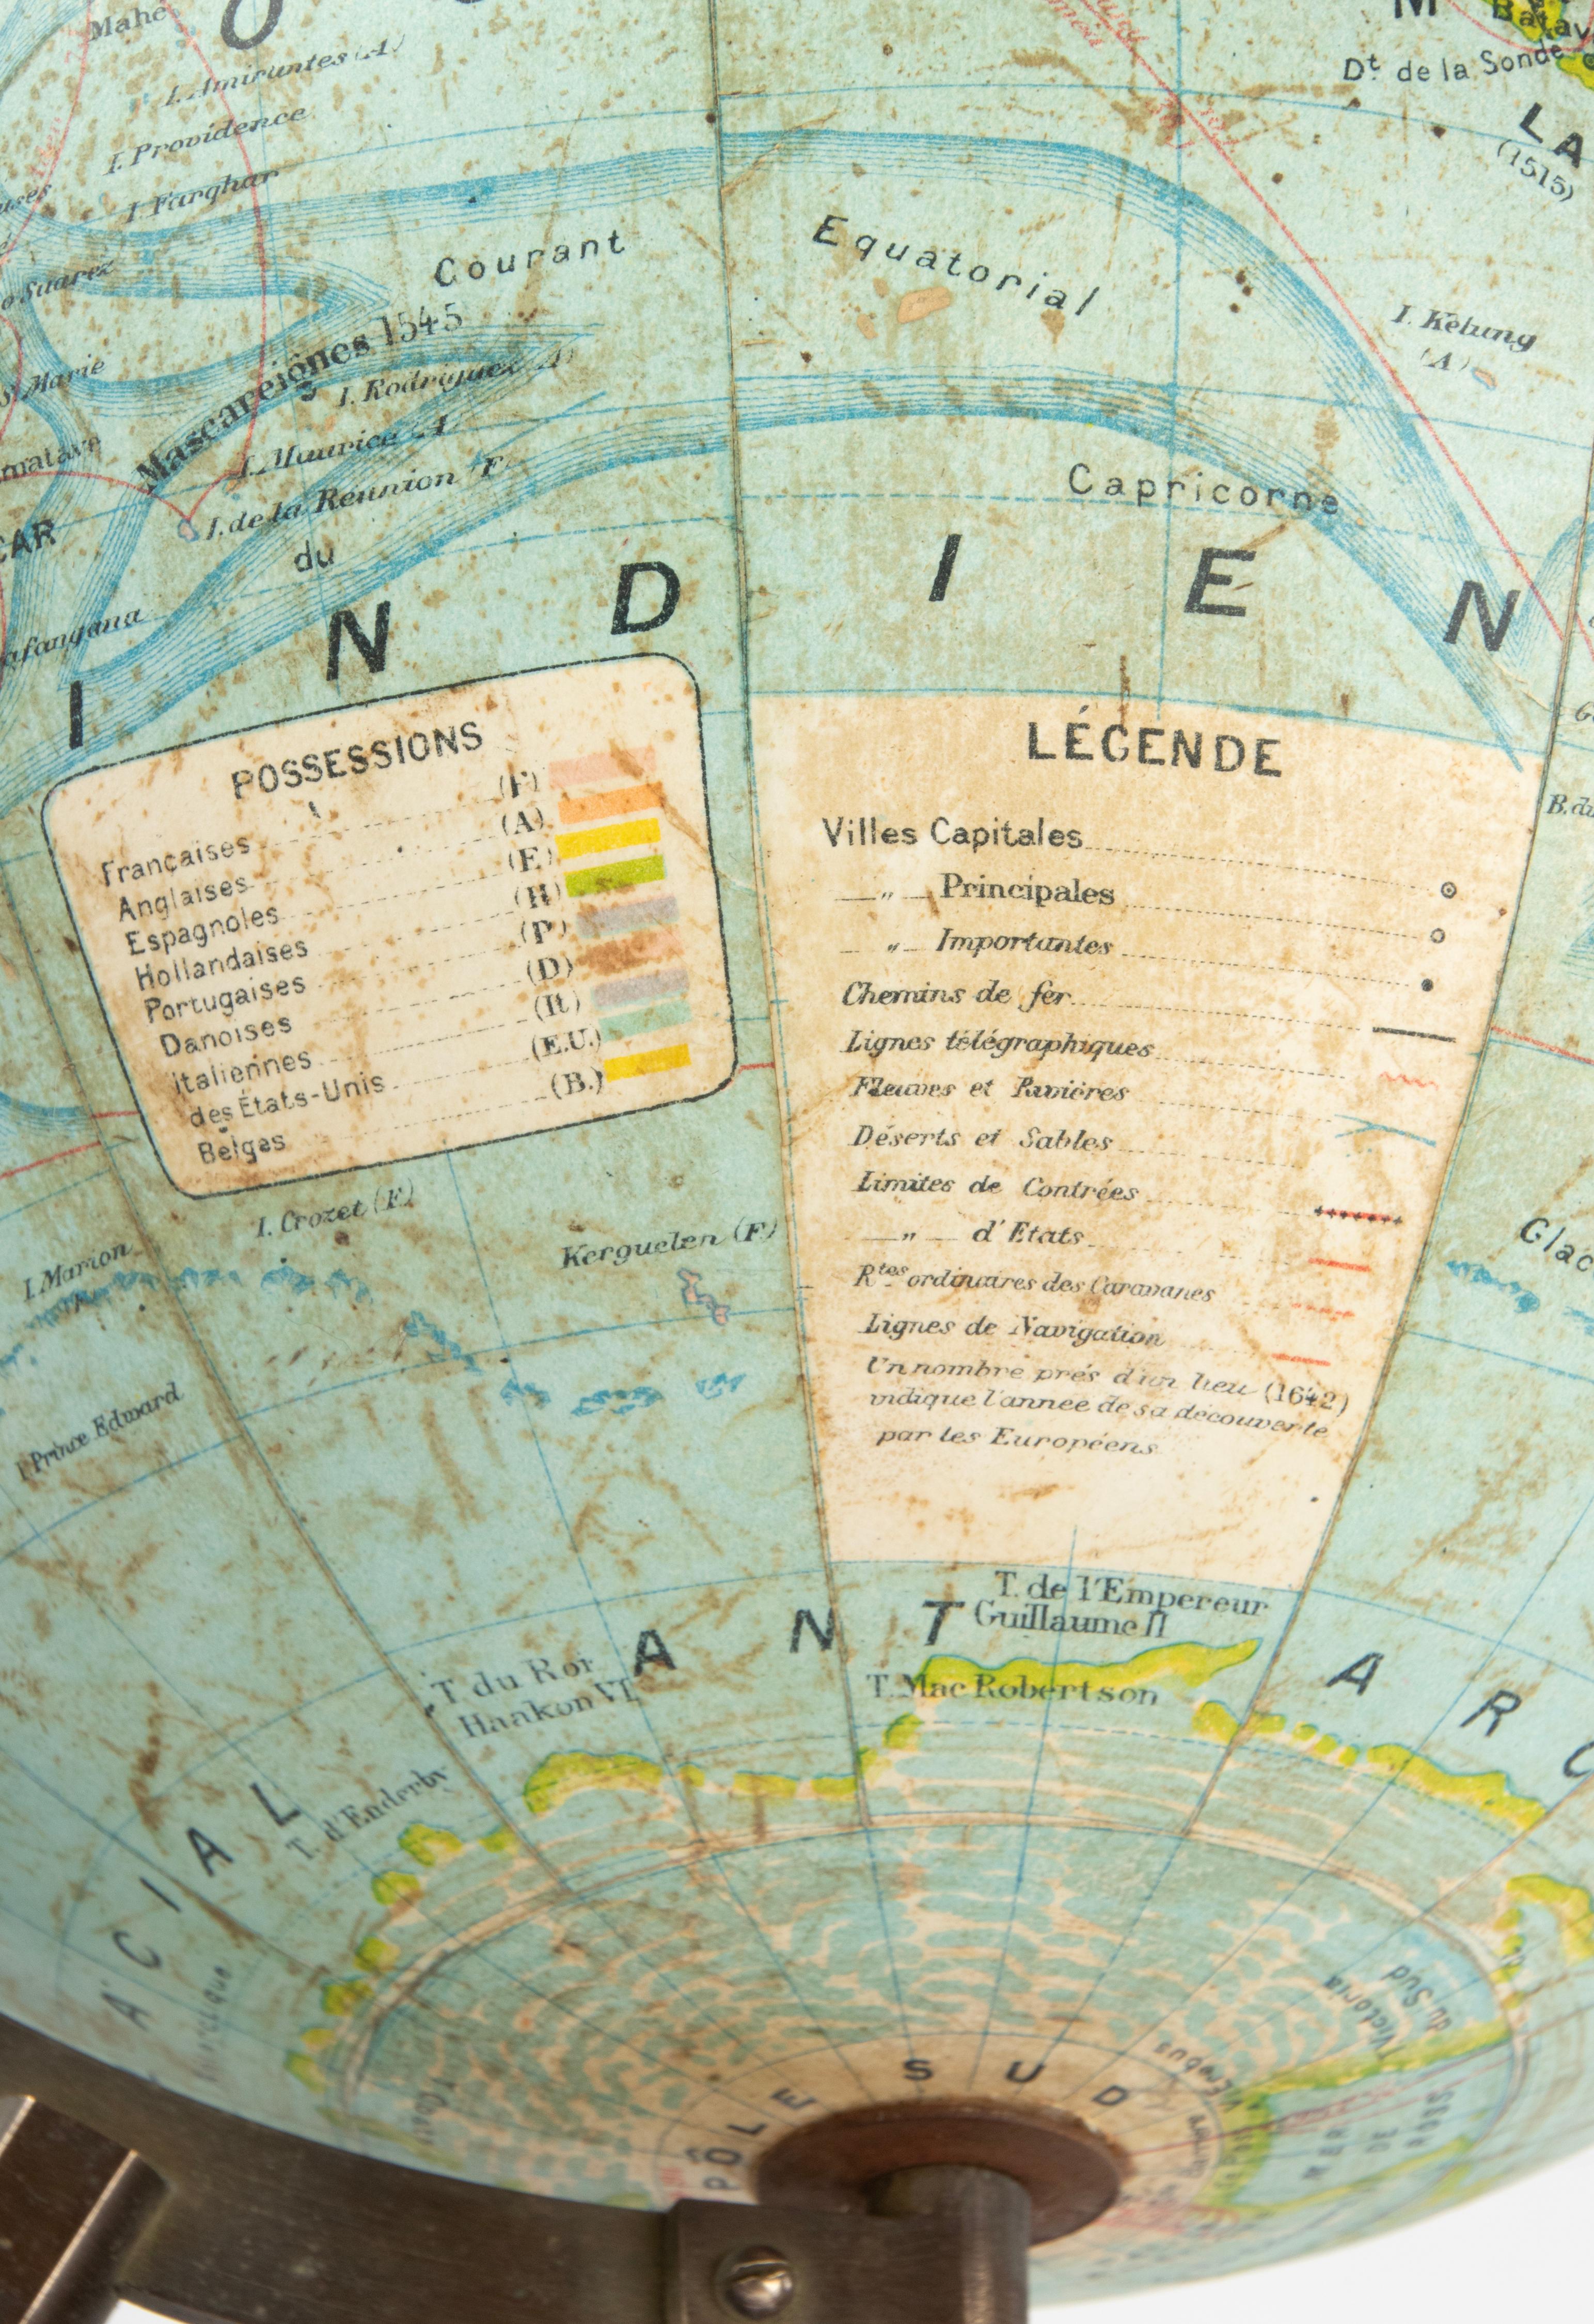 World Globe des späten 19. Jahrhunderts – herausgegeben von J. Forest Paris – Globe Terrestre 12